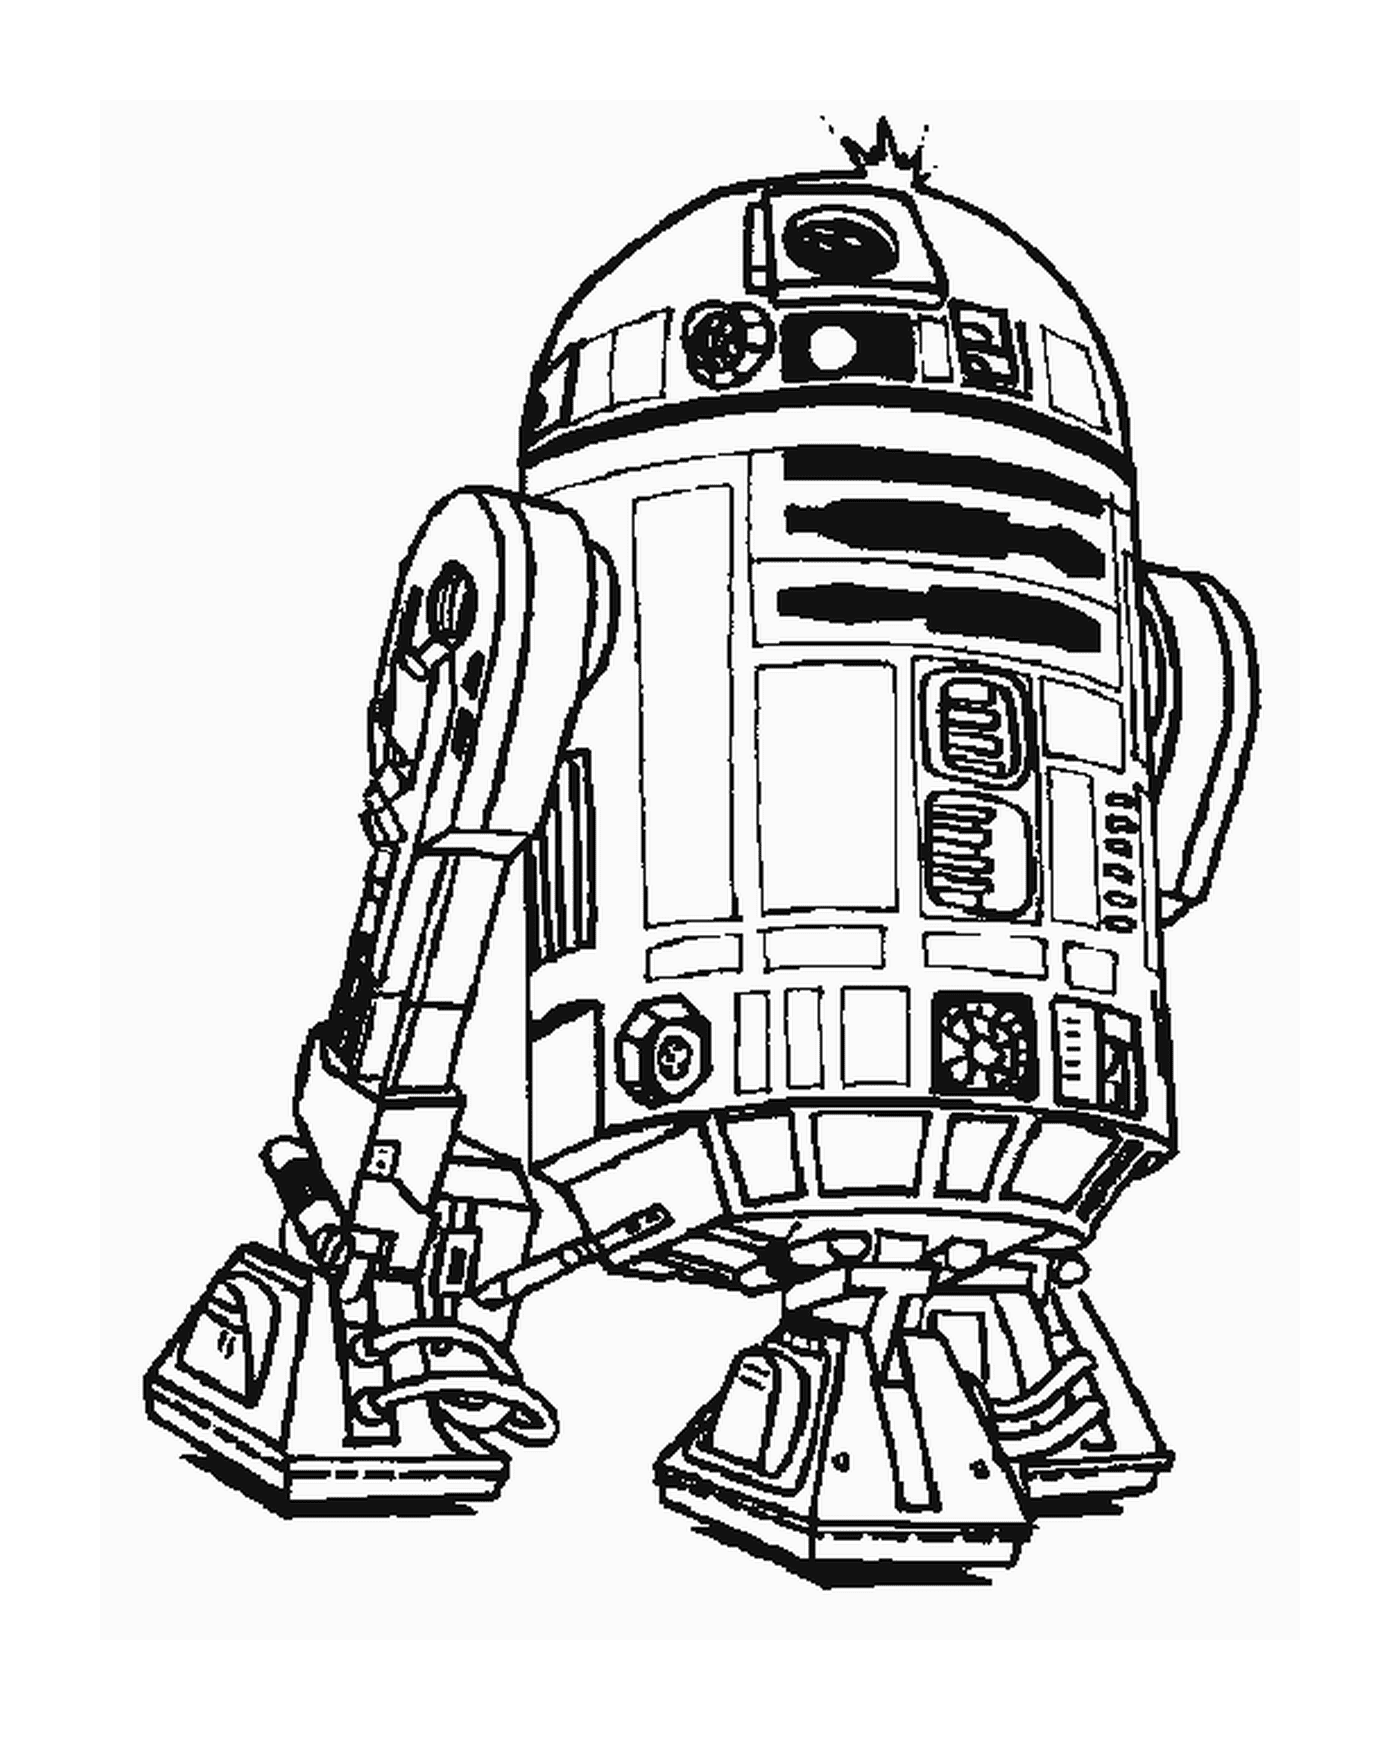  Zeichnung eines R2-D2-Roboters 